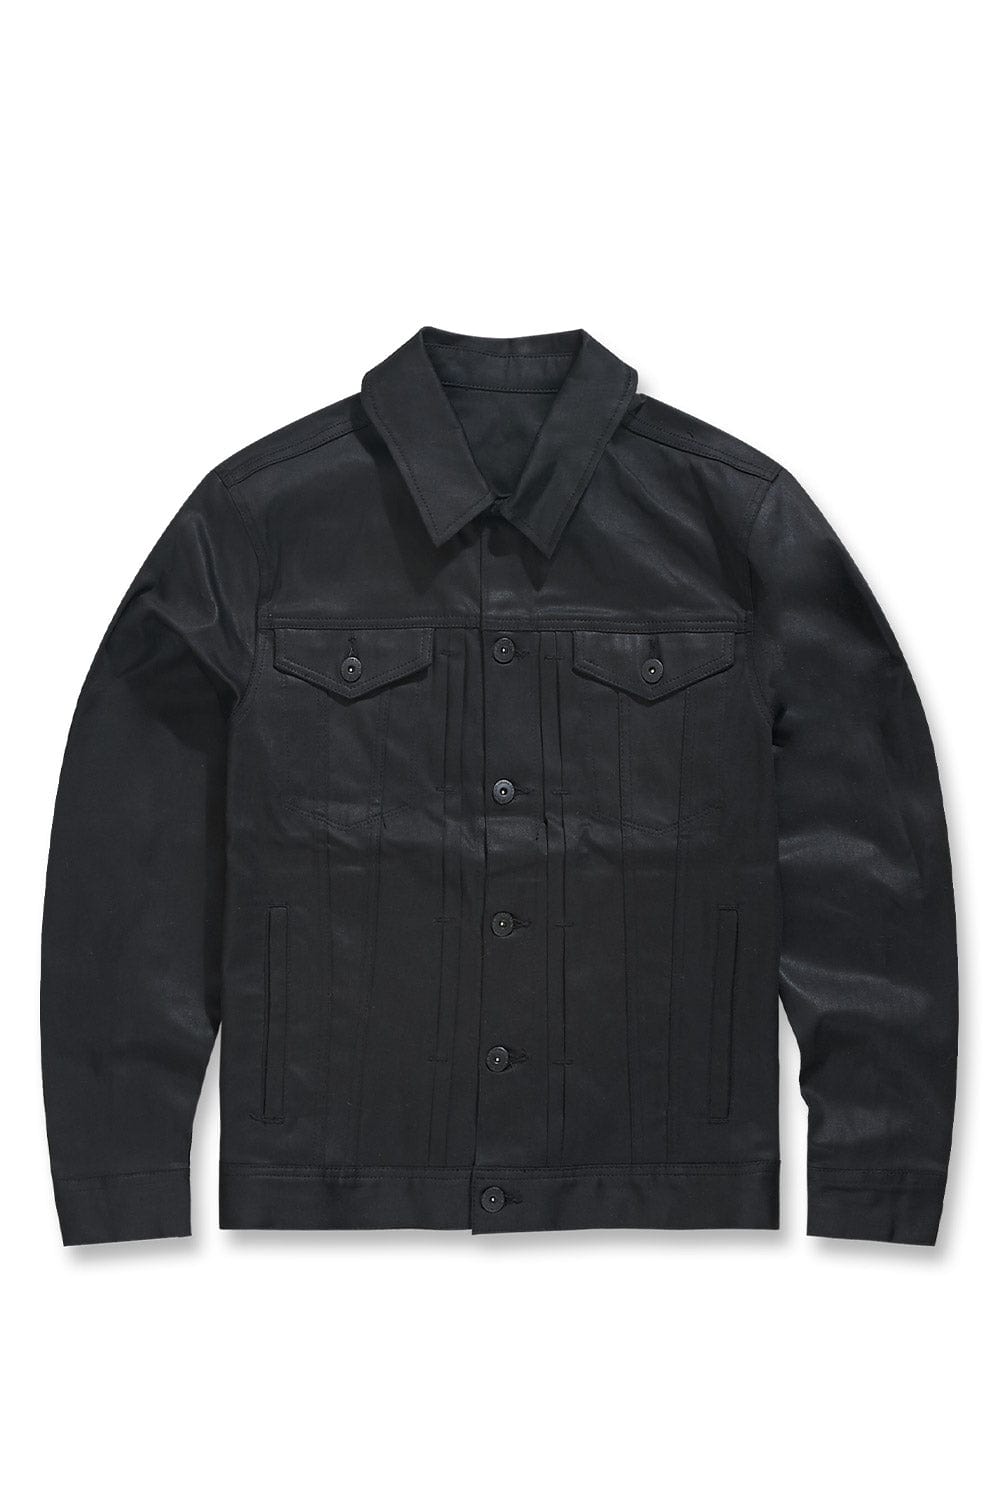 Jordan Craig Smooth Criminal Denim Trucker Jacket 2.0 (Jet Black) S / Jet Black